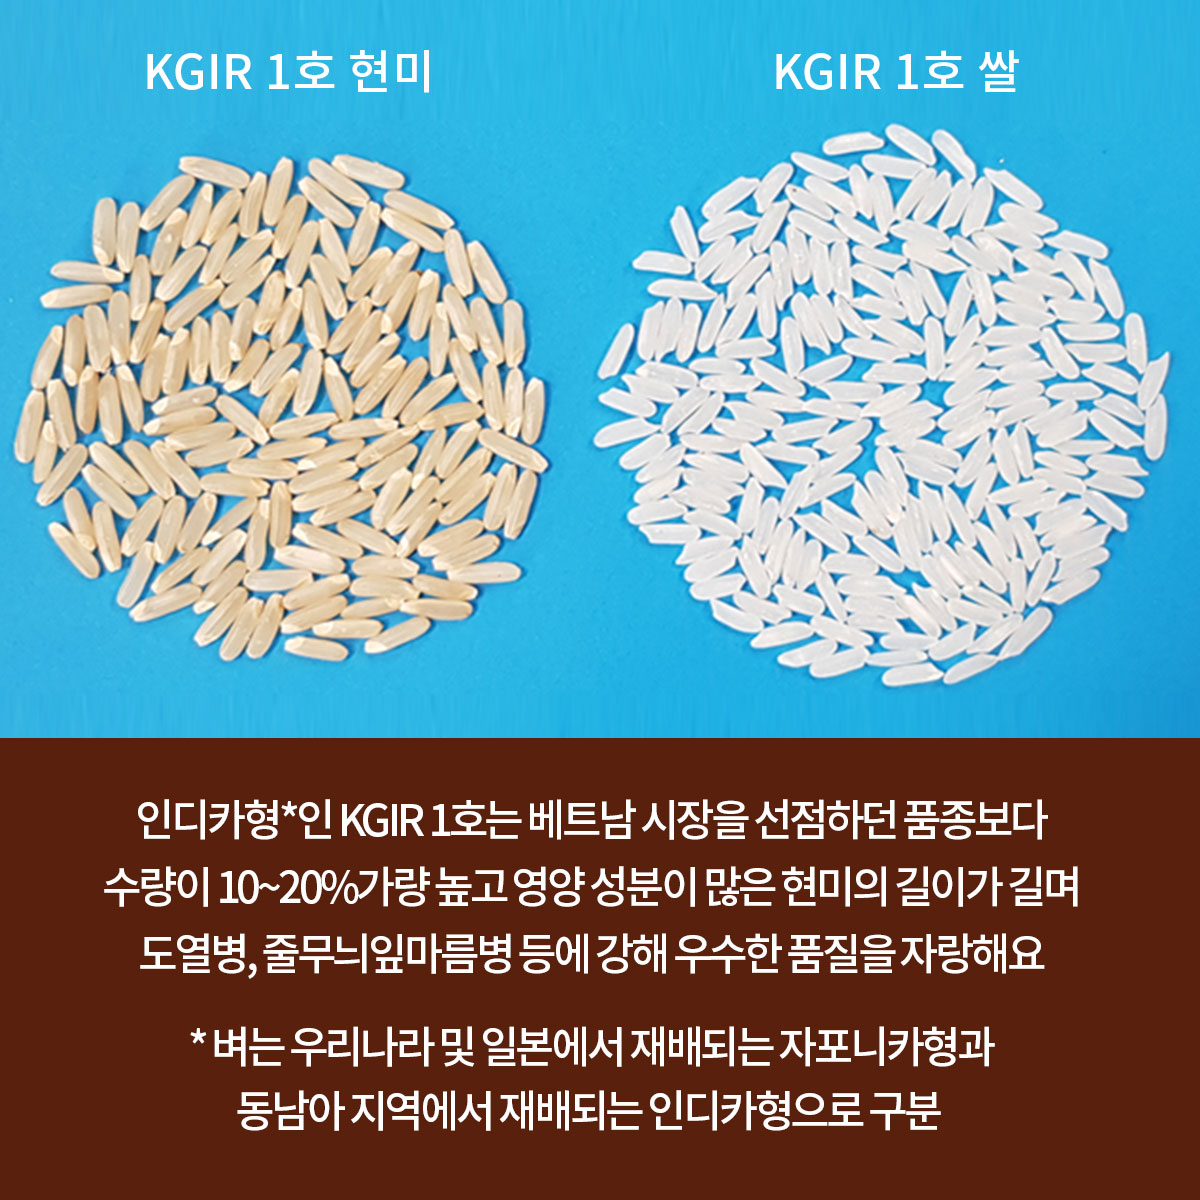 GSP 사업을 통한 벼 종자 개발(KGIR 1호) 4.jpg